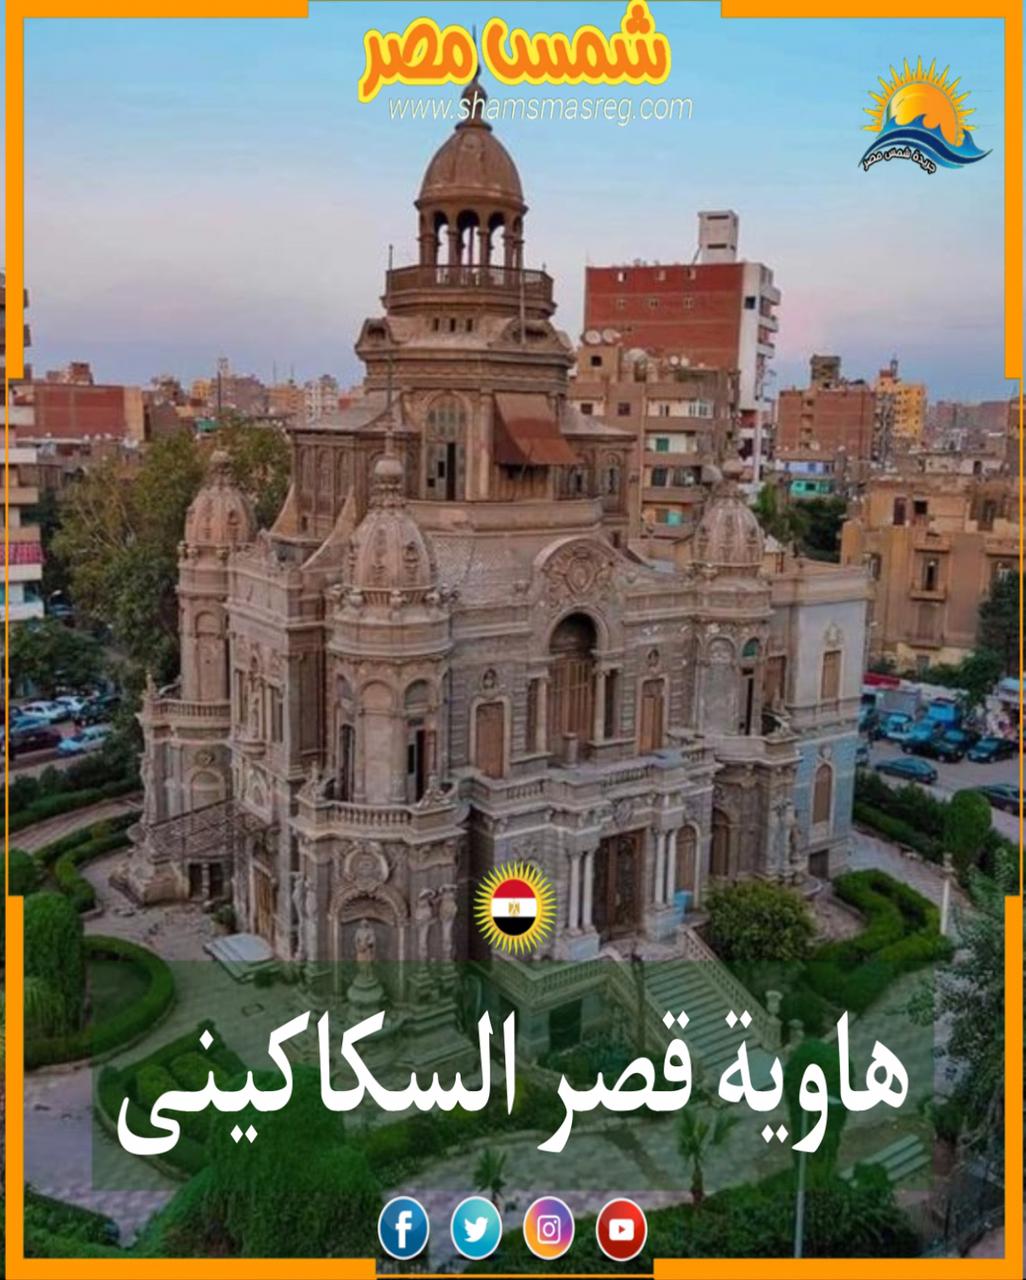 شمس مصر/ هاوية قصر السكاكيني .